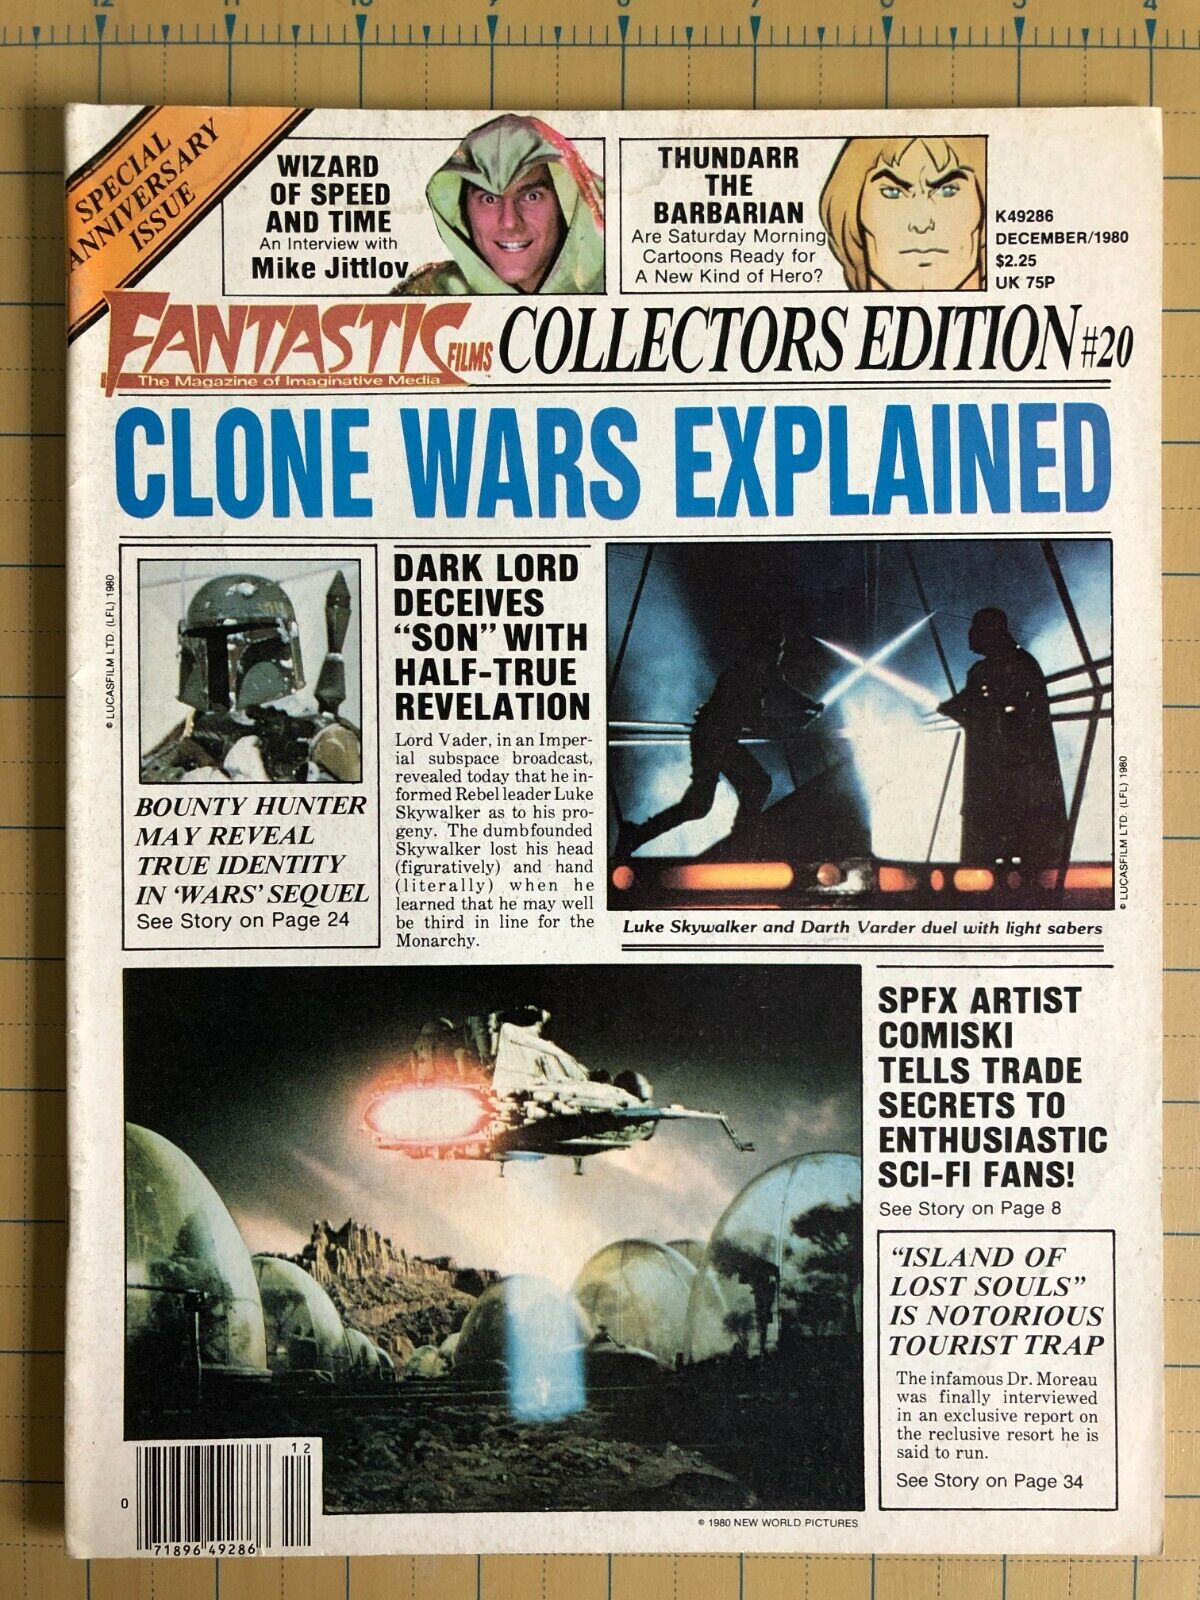 Fantastic Films #20, Dec 1980, Clone Wars, Boba Fett discussion, Ungraded